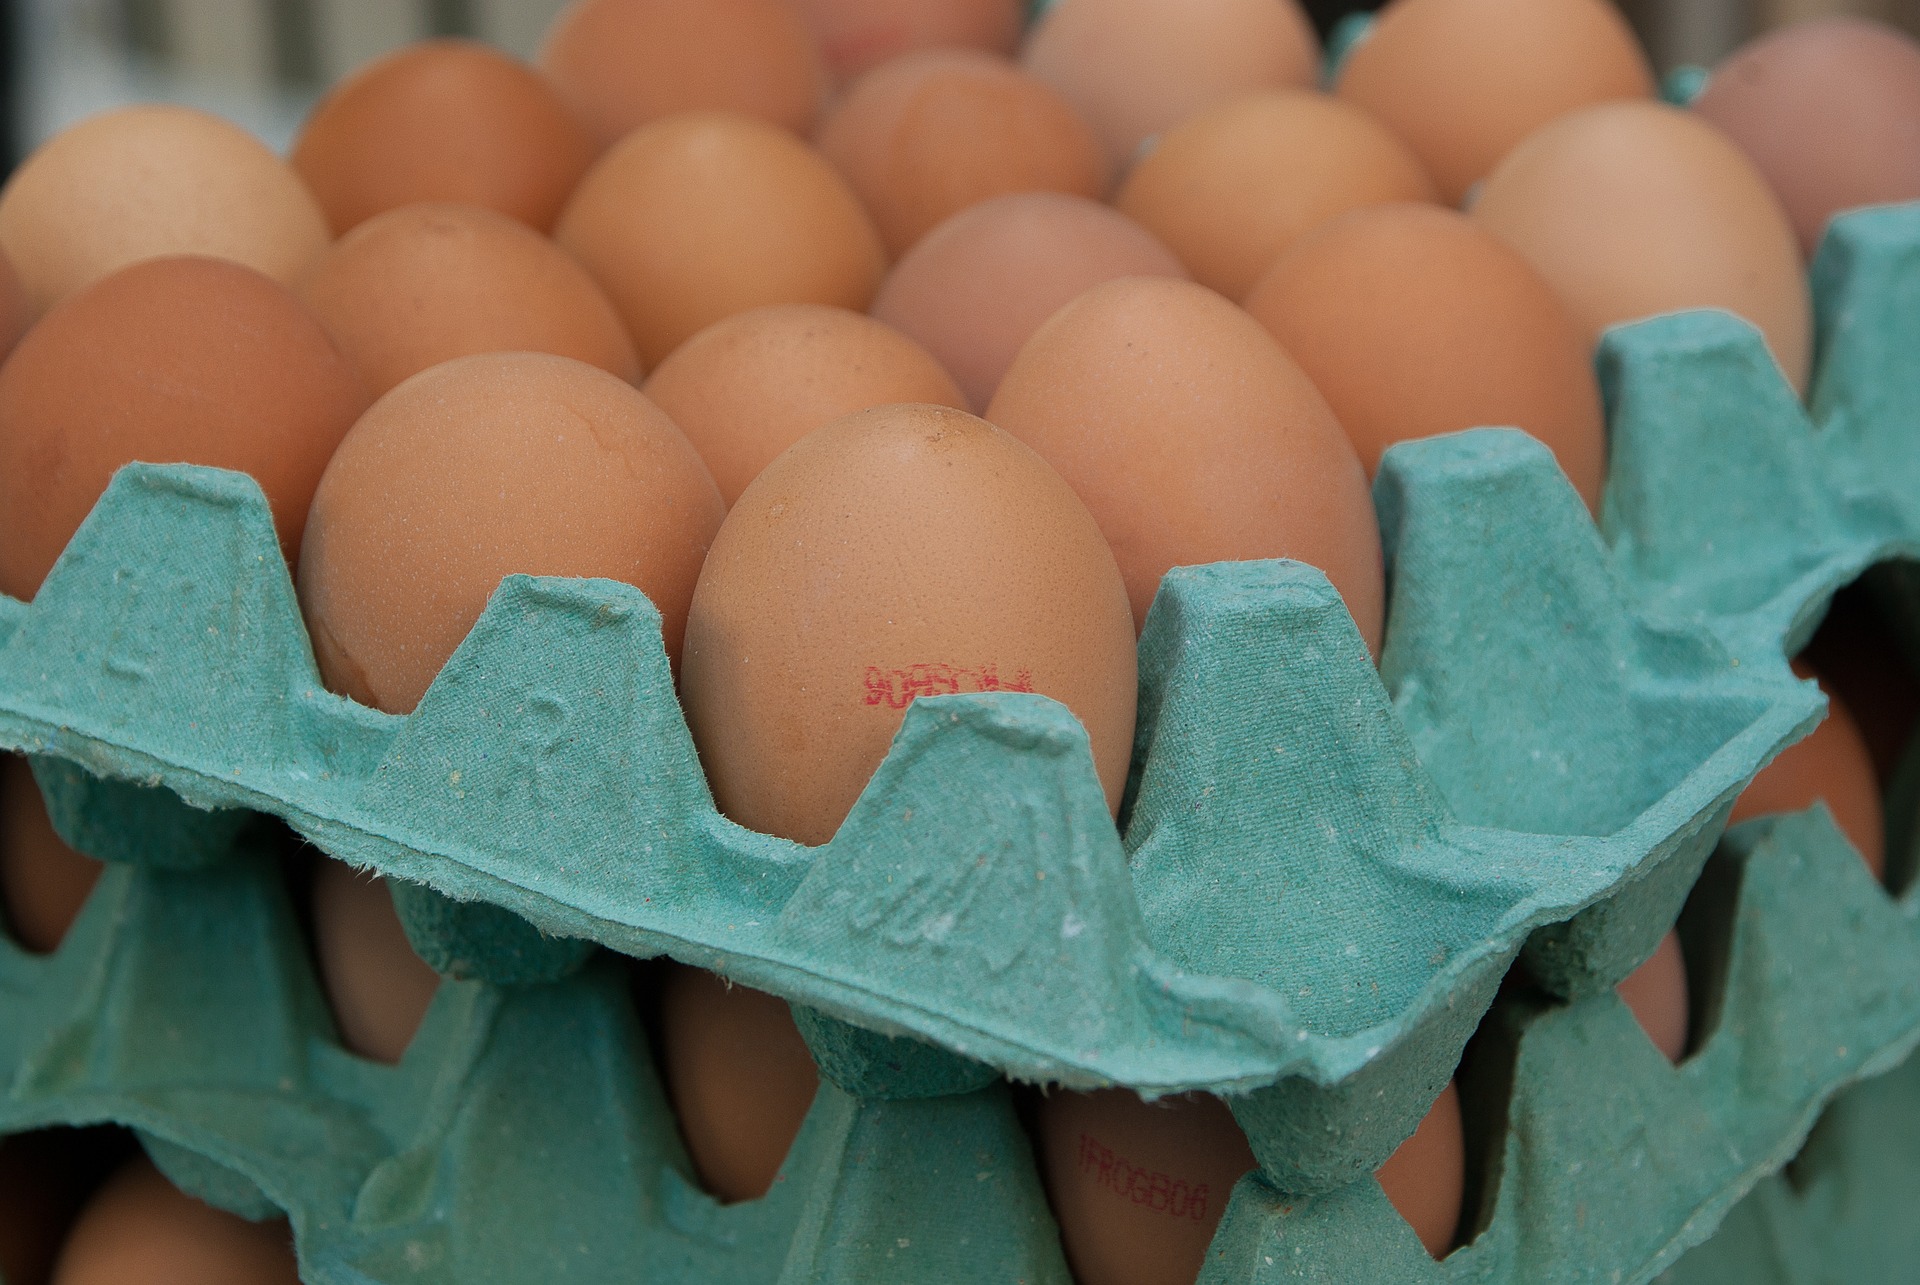 Eksport jaj i produktów jajecznych do Tajlandii